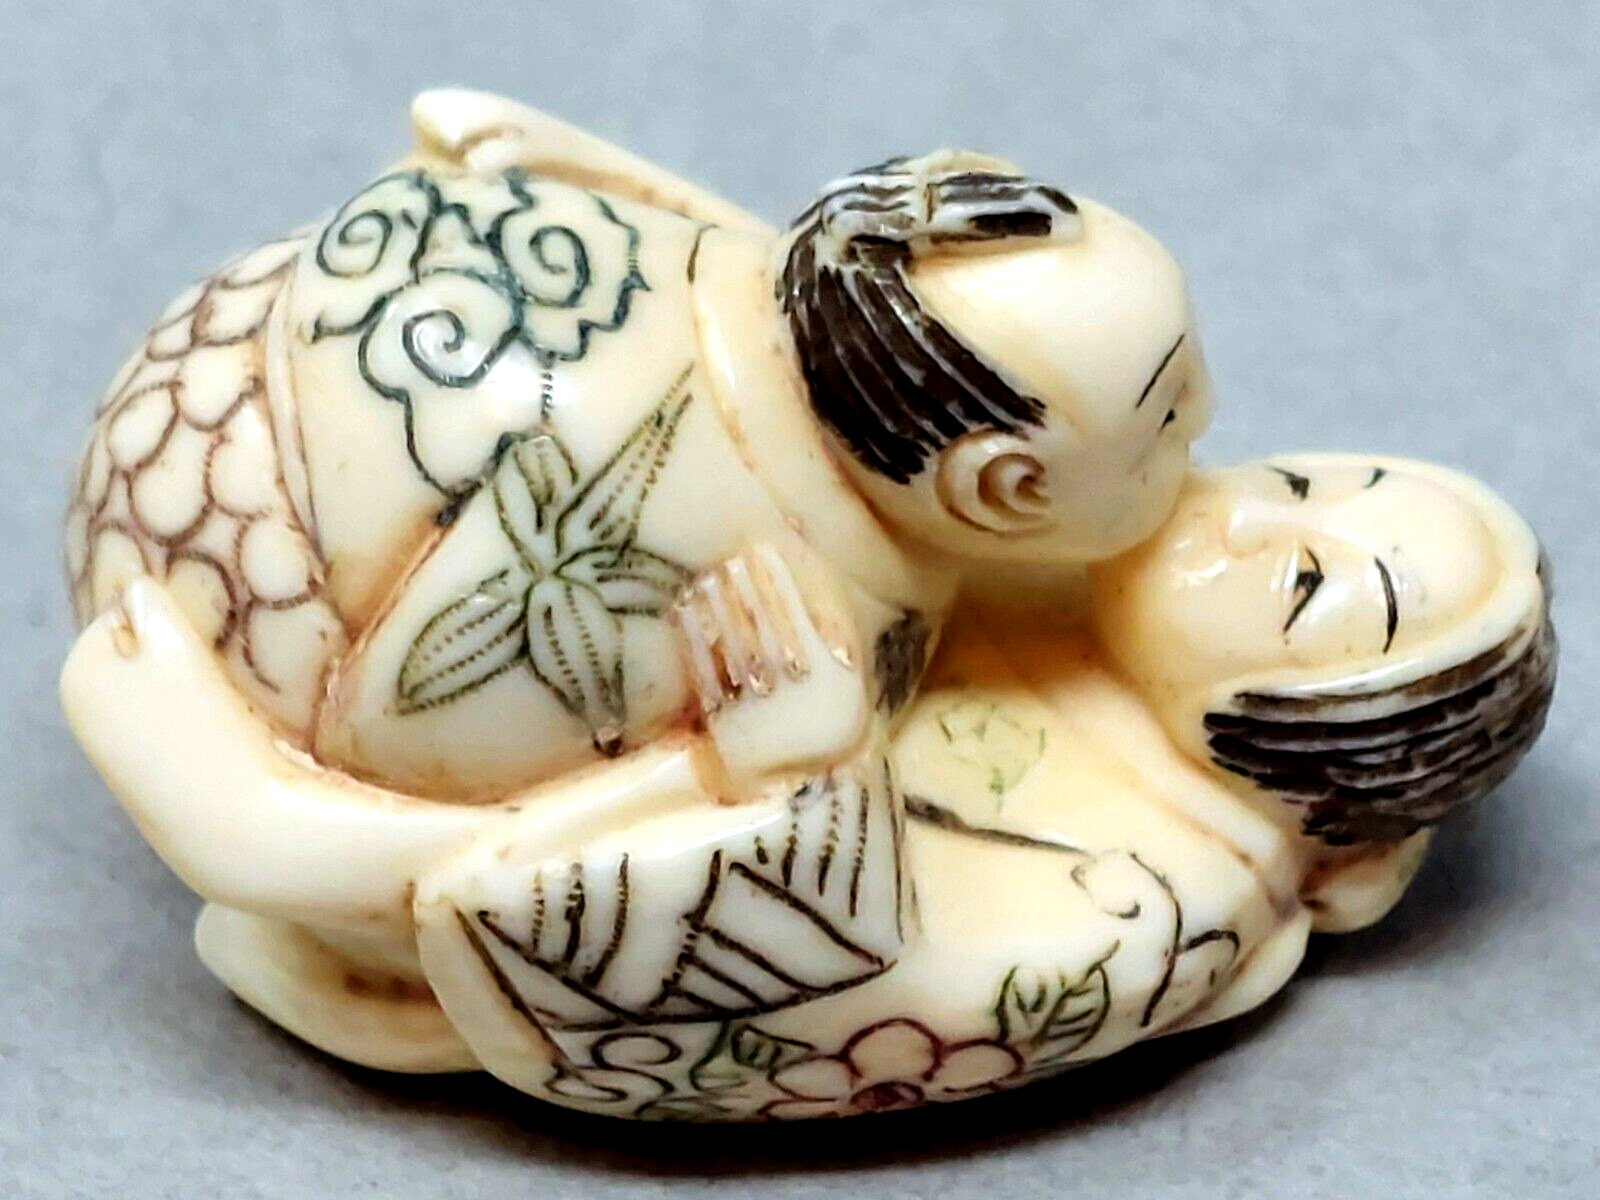 Vtg Polychrome Resin Netsuke Carved Shunga erotic Figurine Erotic Art Signed